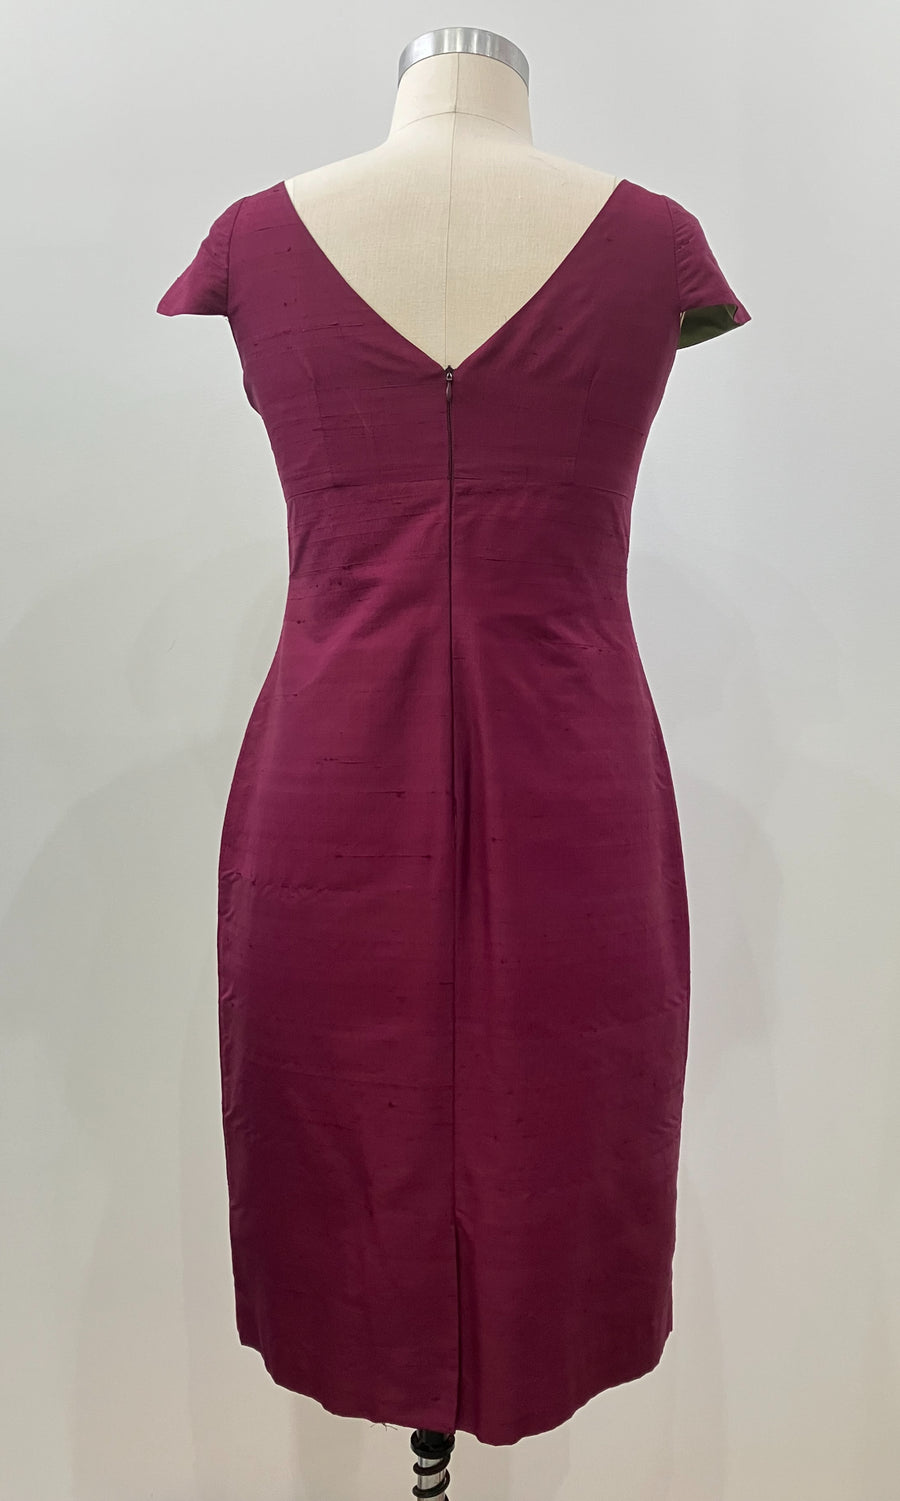 Wine Cap-sleeve Sheath Dress, size Large